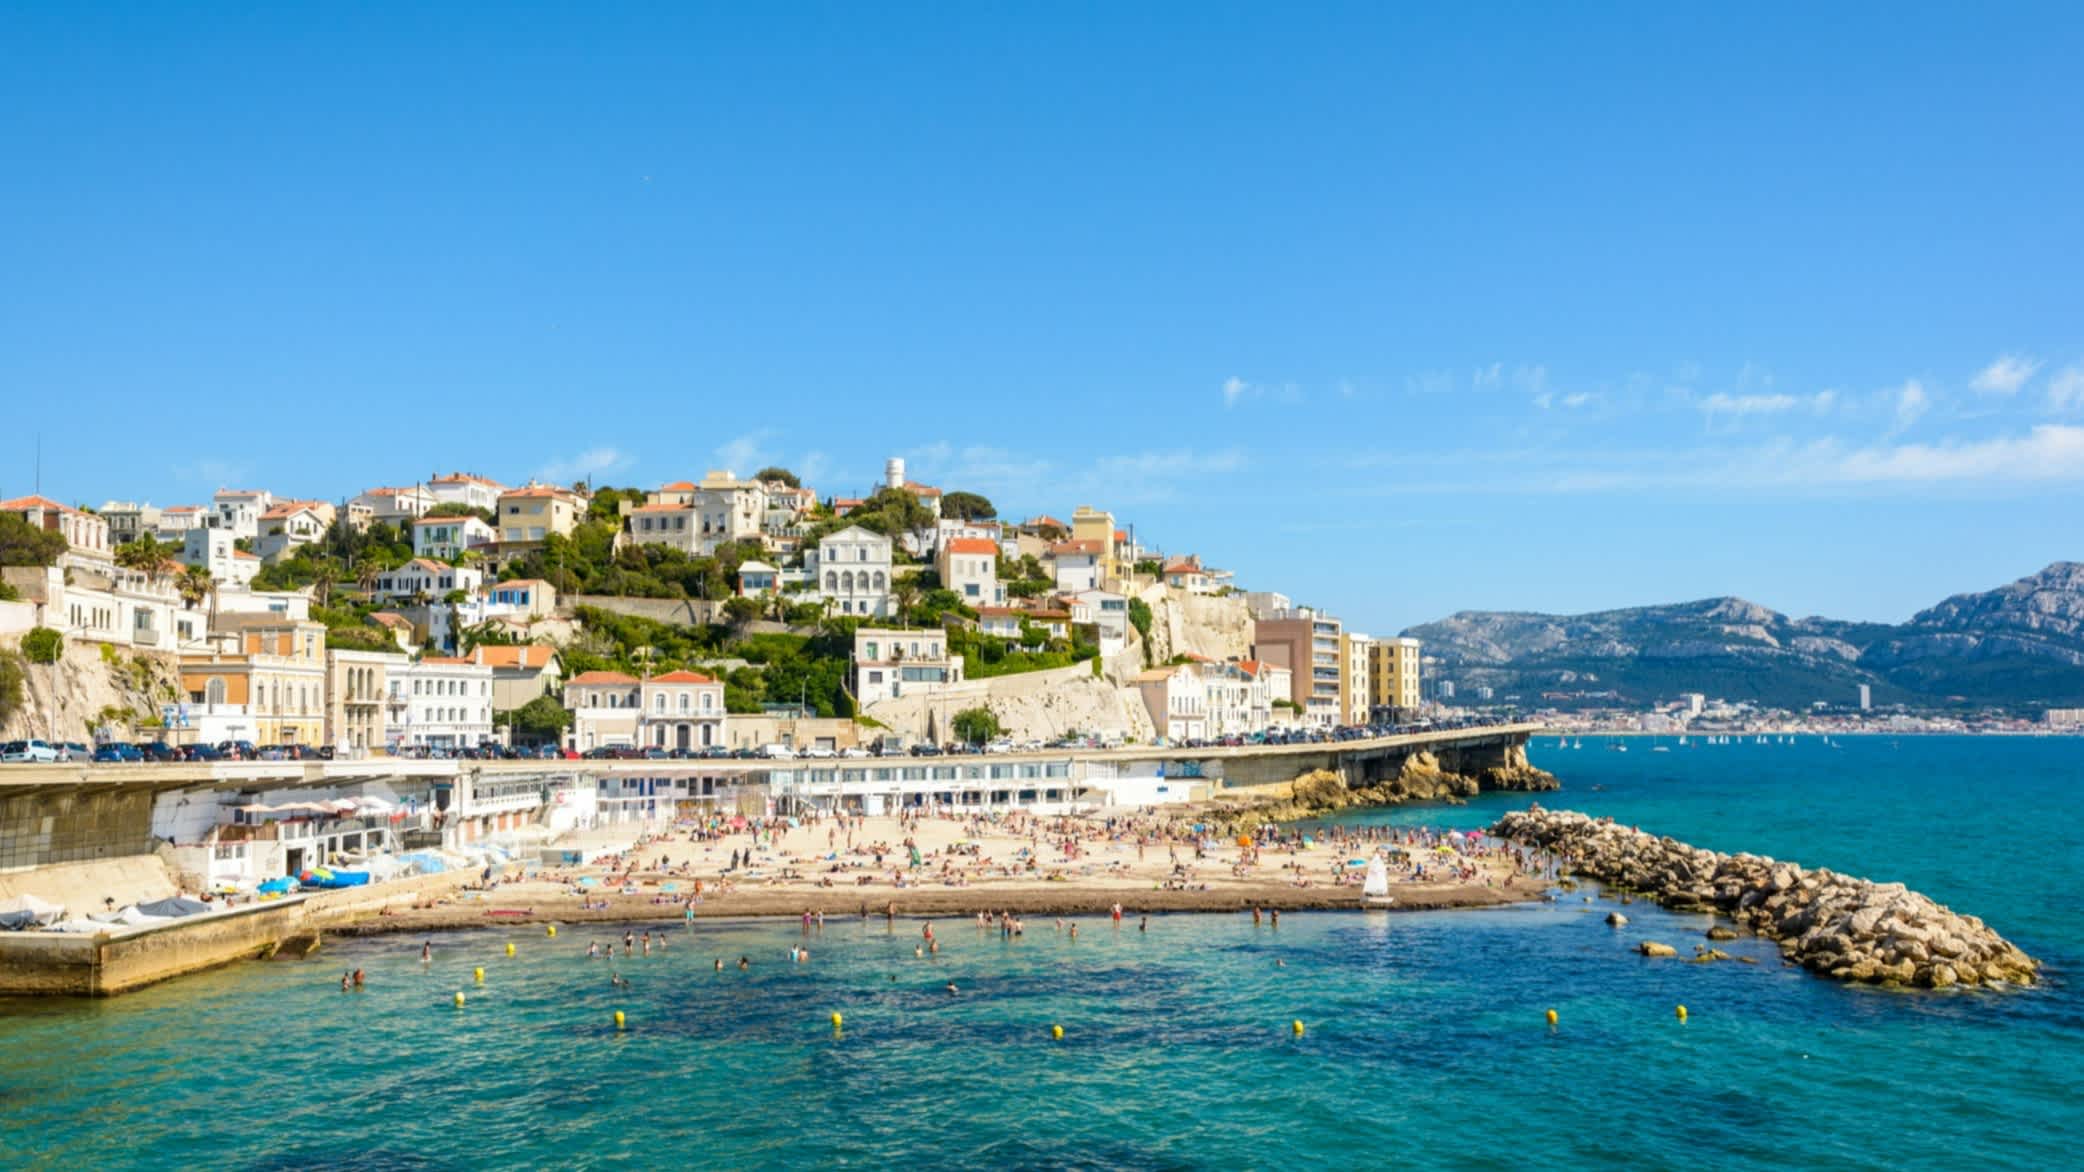 Gesamtansicht der Prophet Strand in Marseille, Frankreich.

